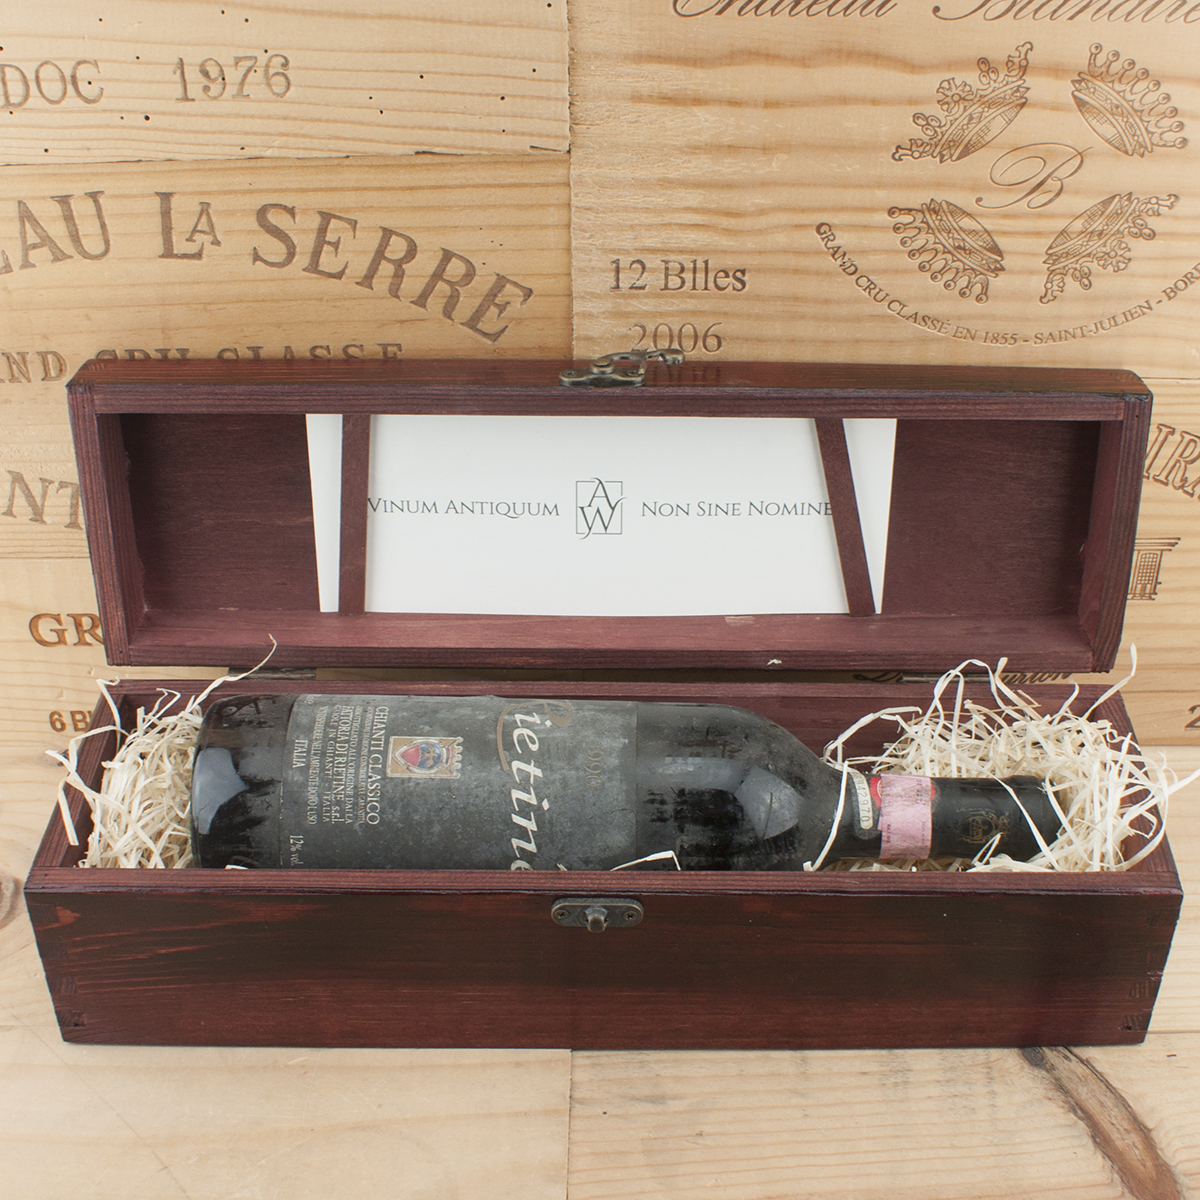 1990 Chianti Classico Rietine in the red box